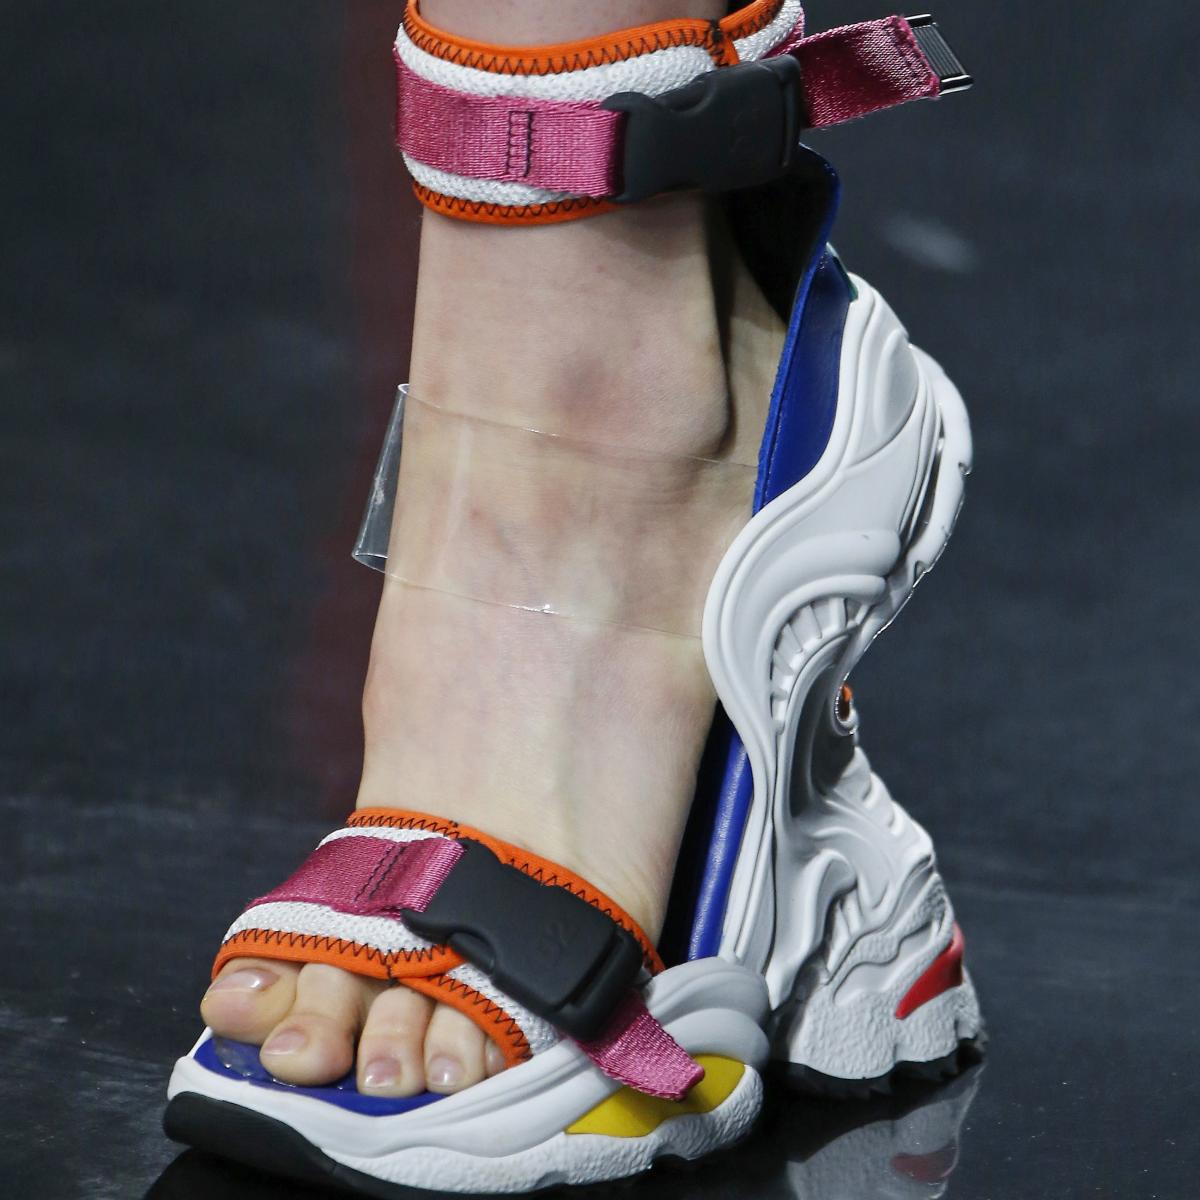 DSquared2 Debuts Dad Sneaker Wedges During Milan Fashion Week